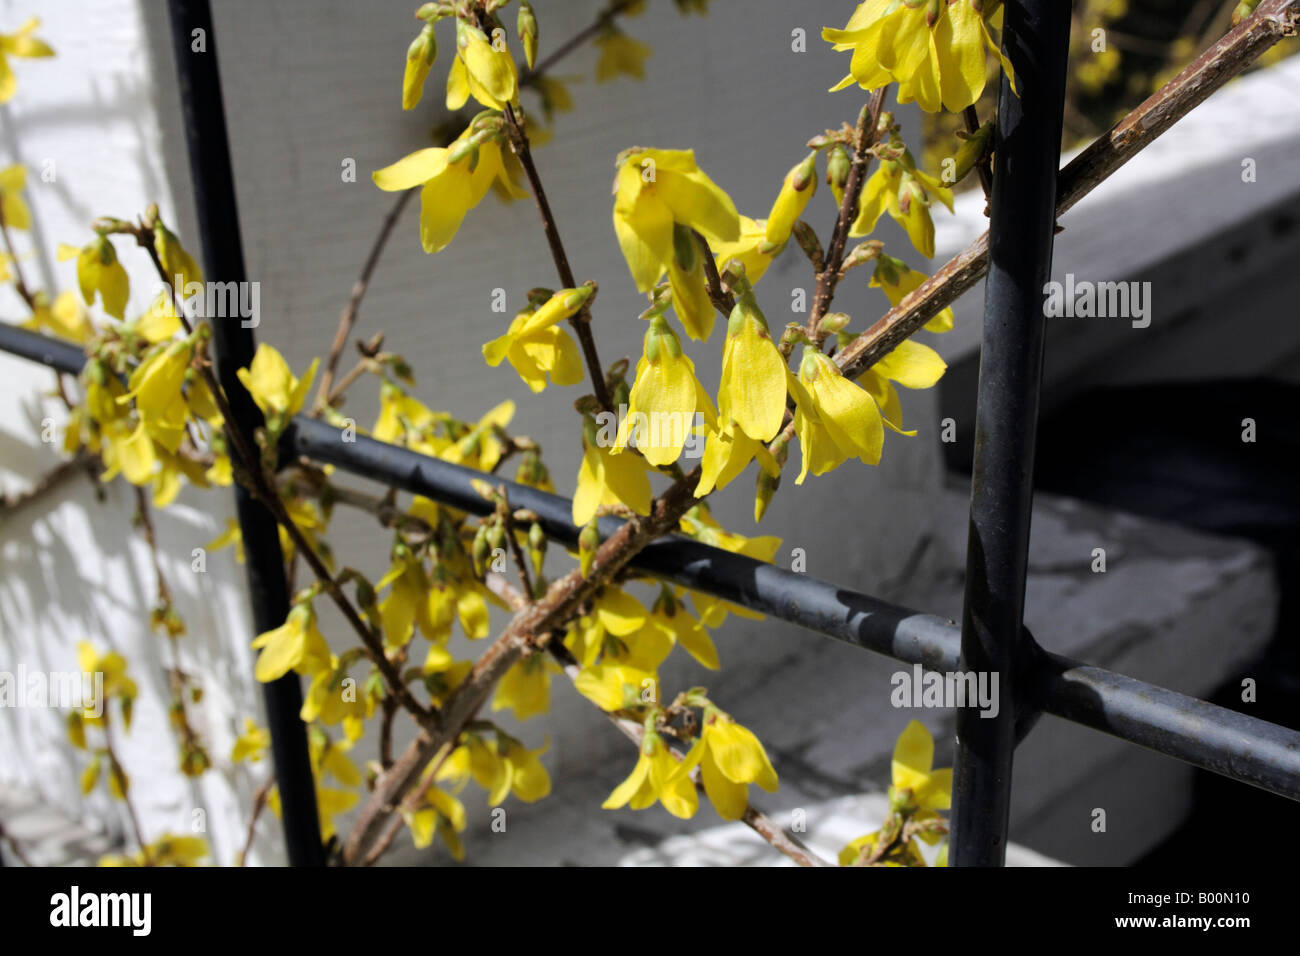 Yellow forsythia blossoms and metal trellis Stock Photo - Alamy